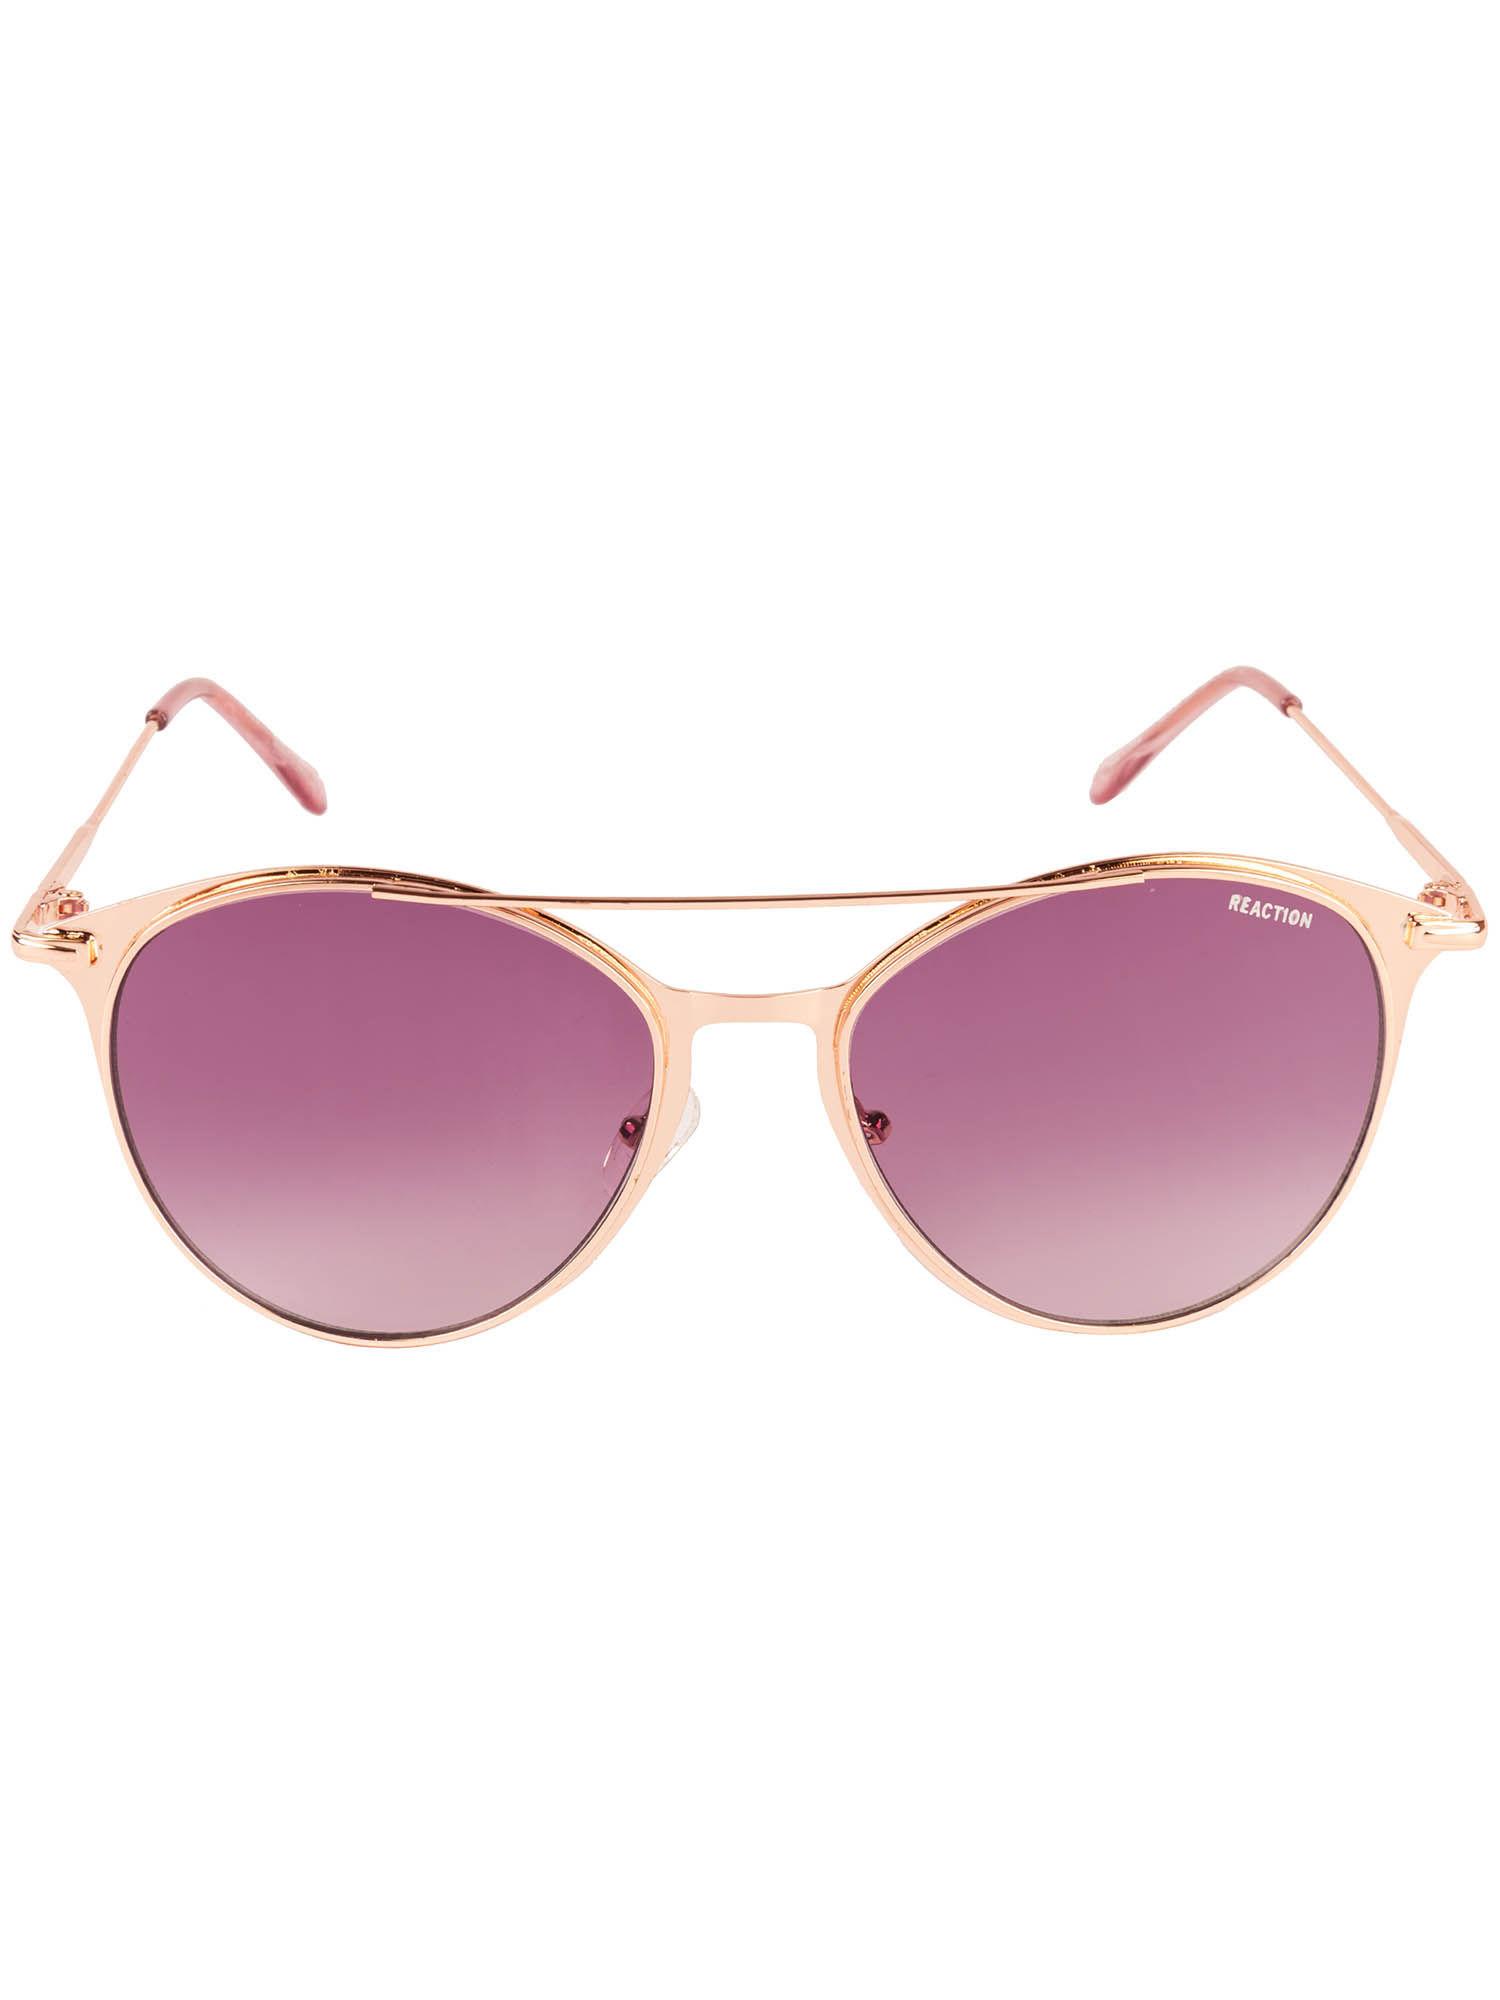 rose-gold-metal-sunglasses